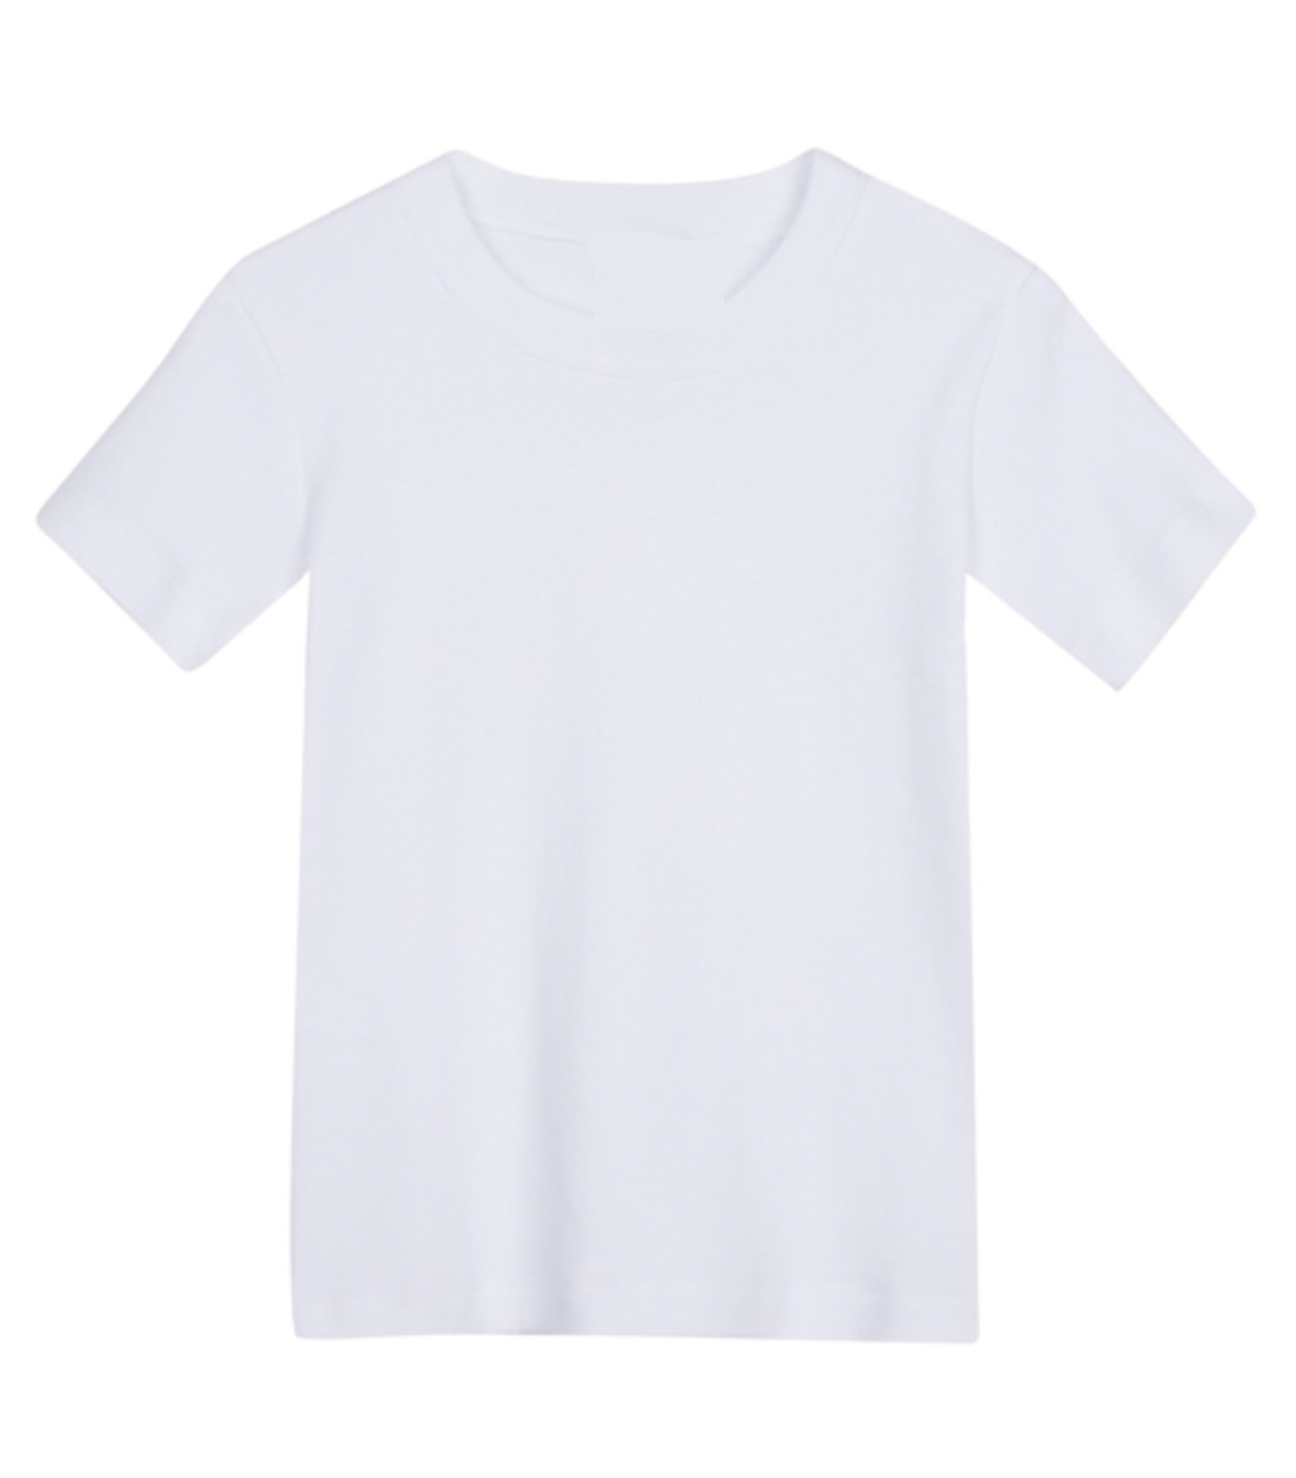 Boy's Short Sleeve T-Shirt